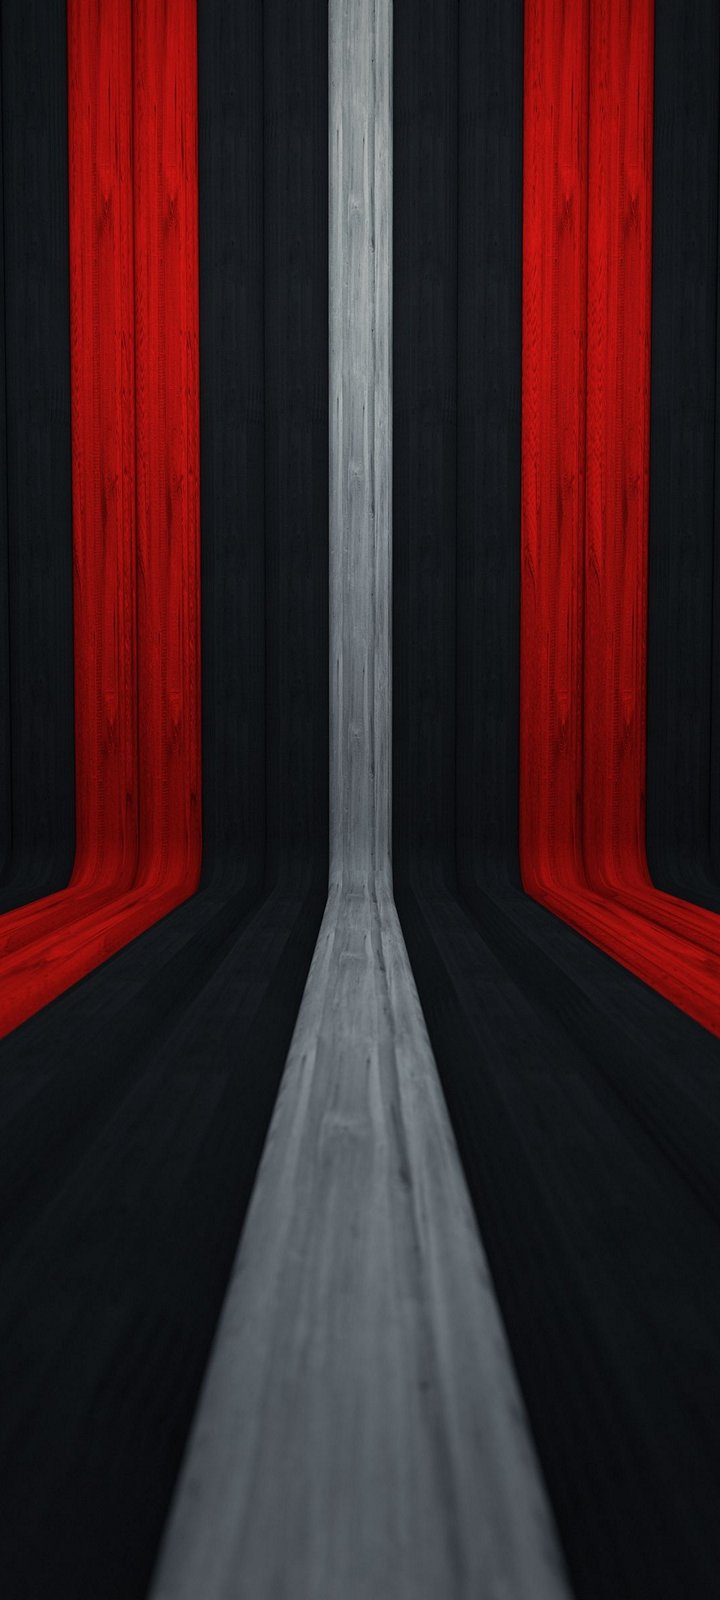 Với giấy dán tường 3D đỏ đen trắng, tường nhà bạn sẽ thật sự đẹp hơn bao giờ hết. Hãy tưởng tượng tường nhà của bạn sẽ trở thành một tác phẩm nghệ thuật độc đáo và thu hút được nhiều ánh nhìn. Click ngay vào ảnh để được trải nghiệm cảm giác thật sự khi sở hữu giấy dán tường 3D đỏ đen trắng.